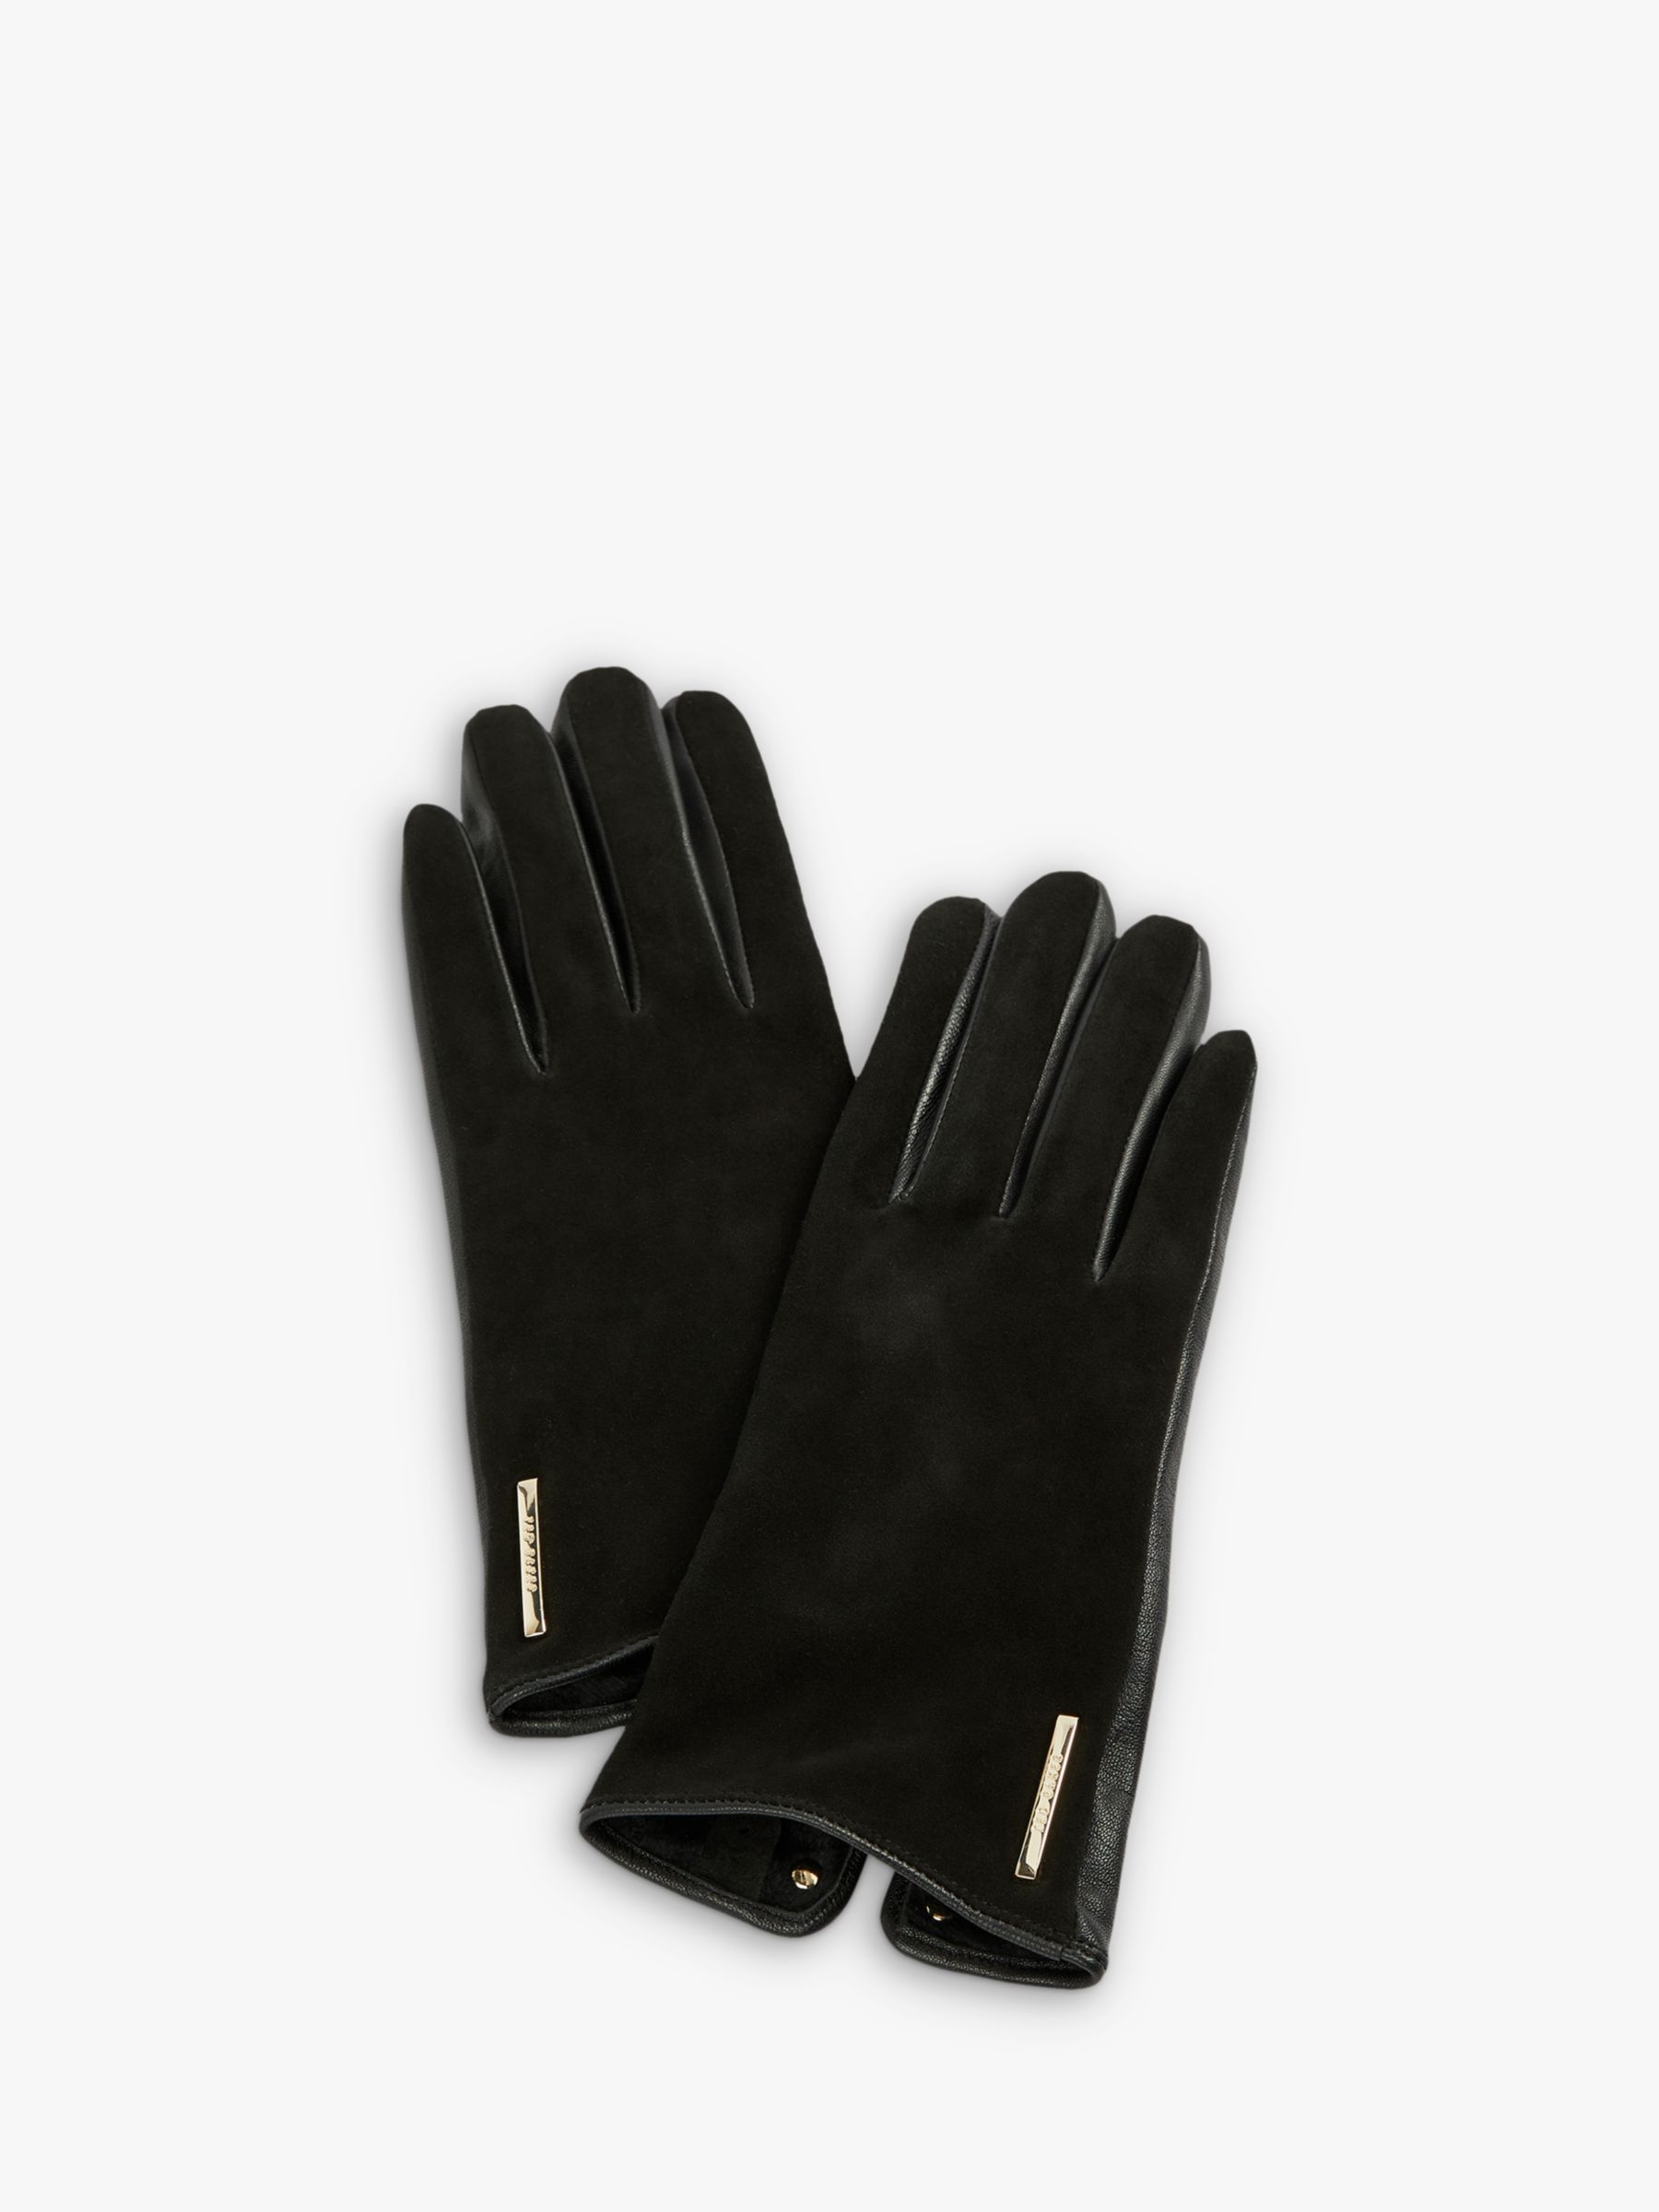 Ted Baker Arlett Leather Gloves, Black at John Lewis & Partners